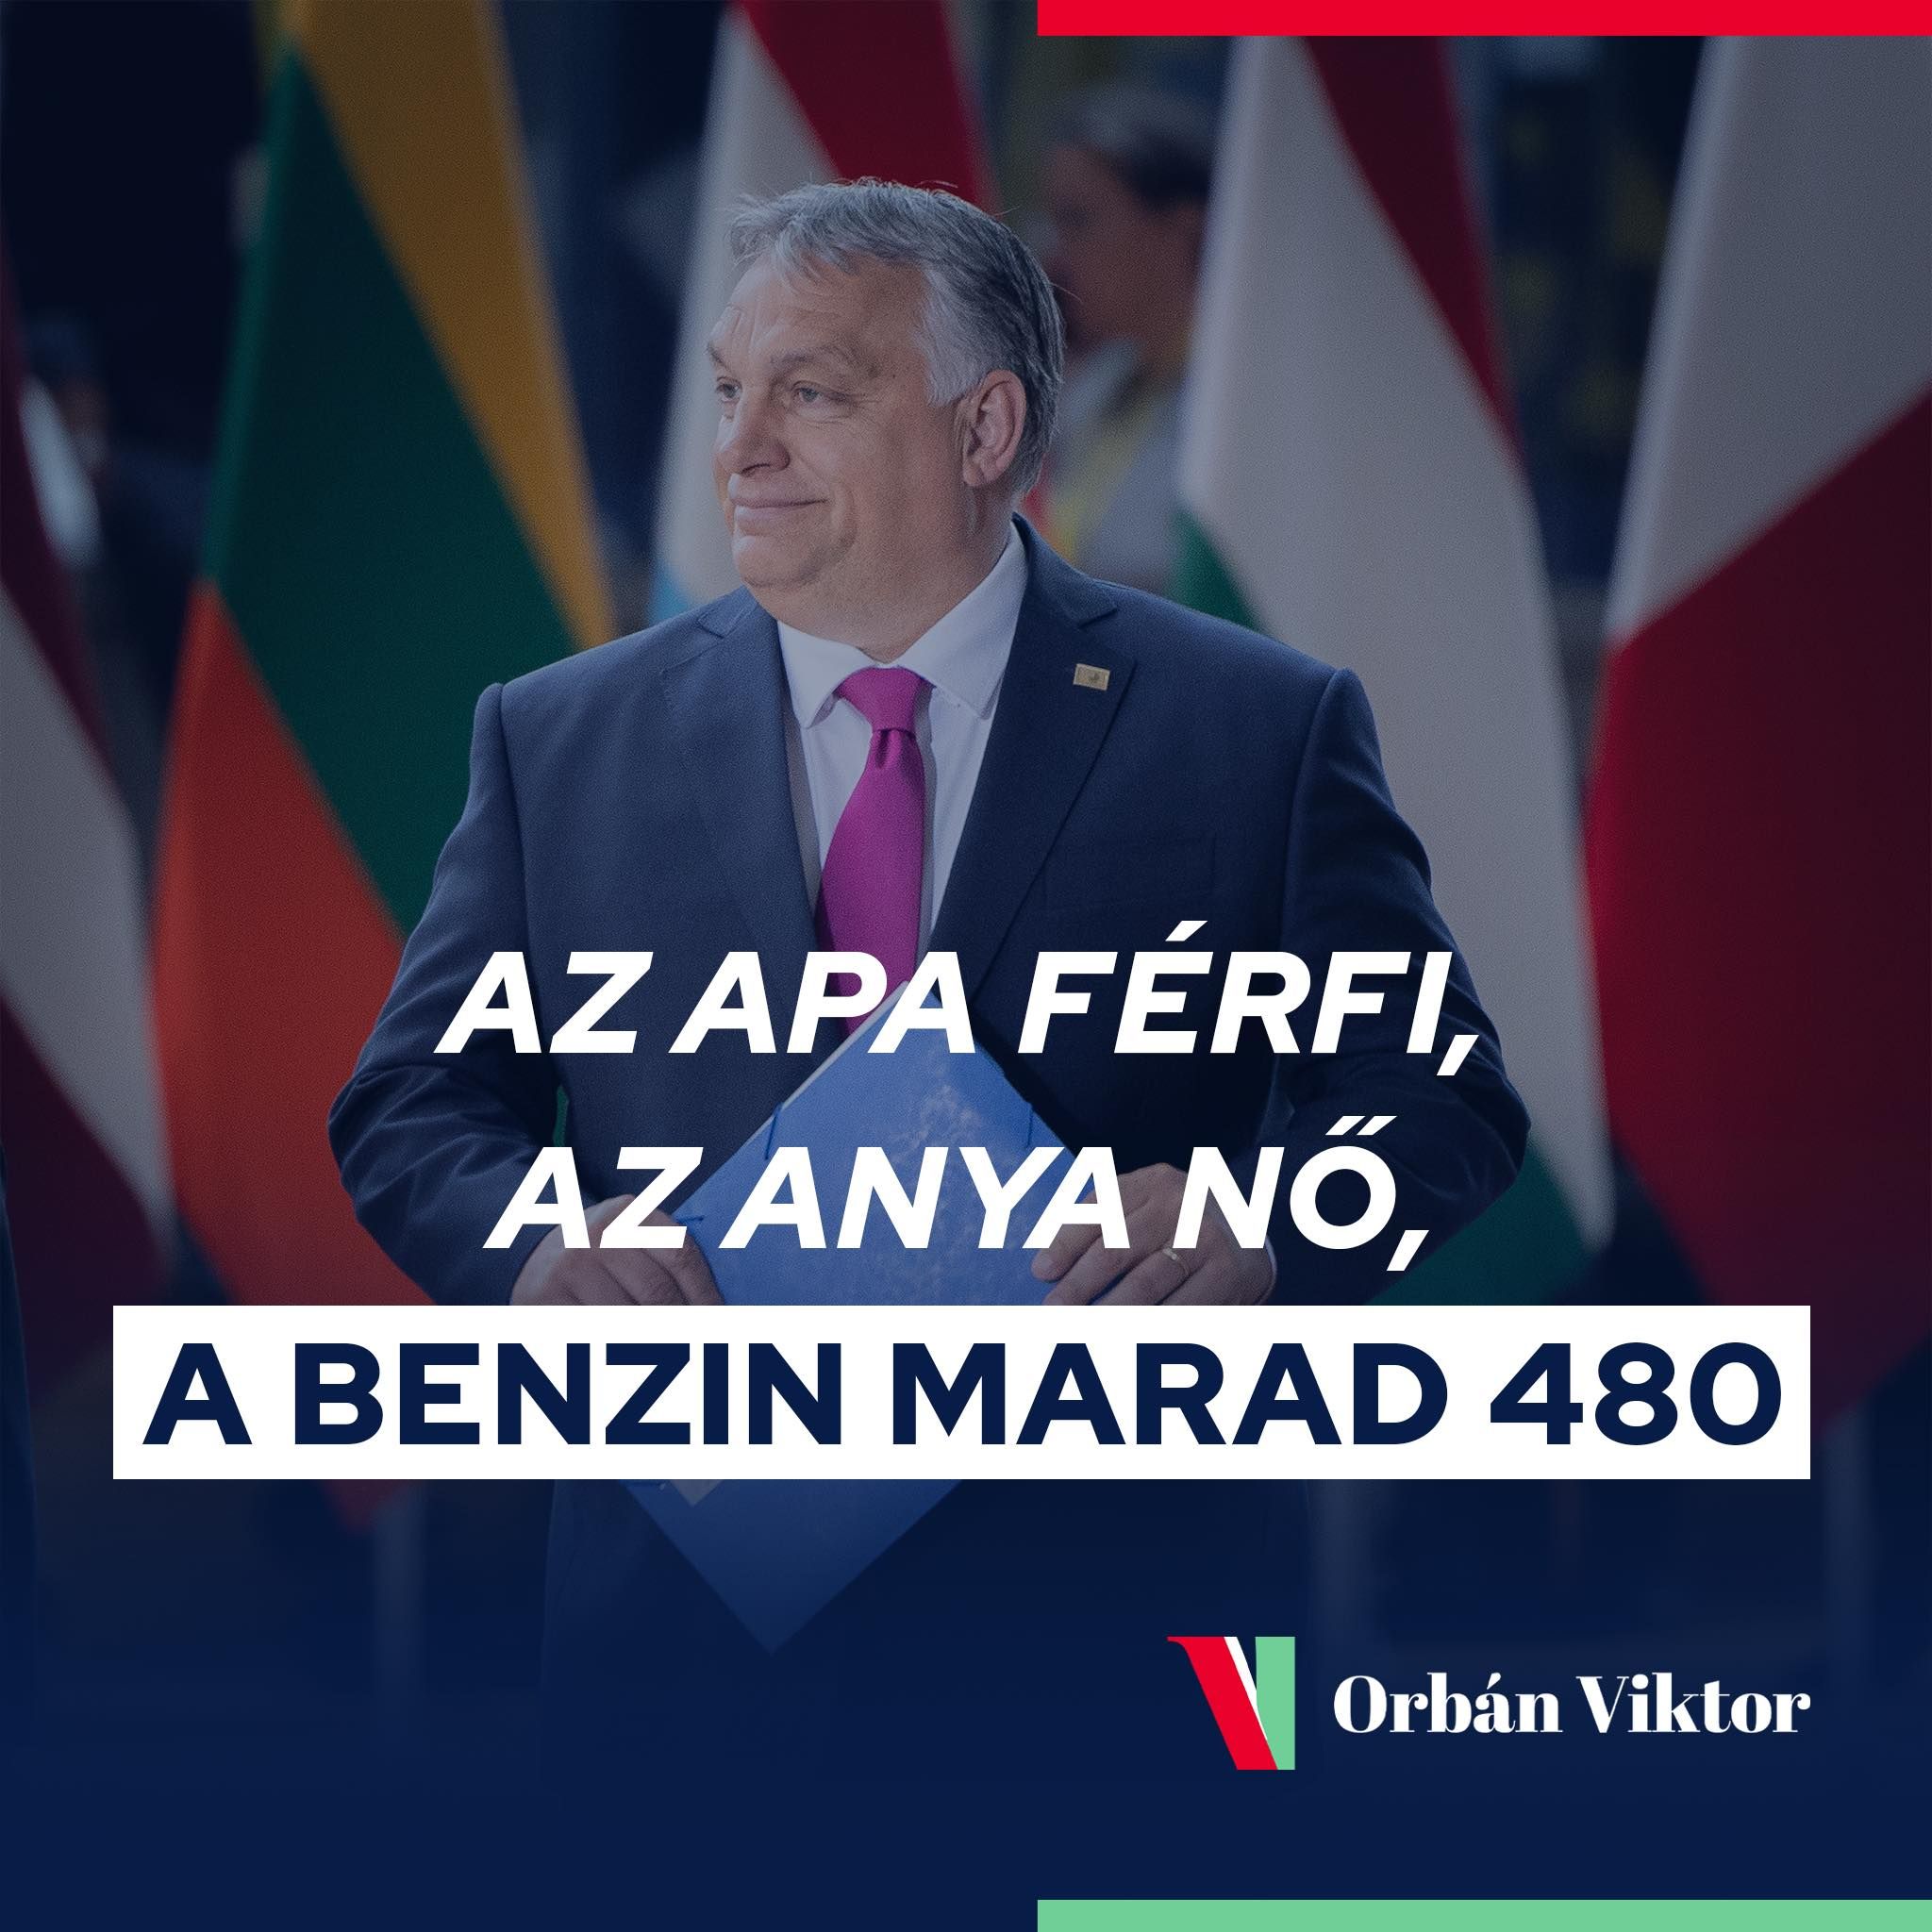 Orbán Viktor: Az apa férfi, az anya nő, a benzin marad 480